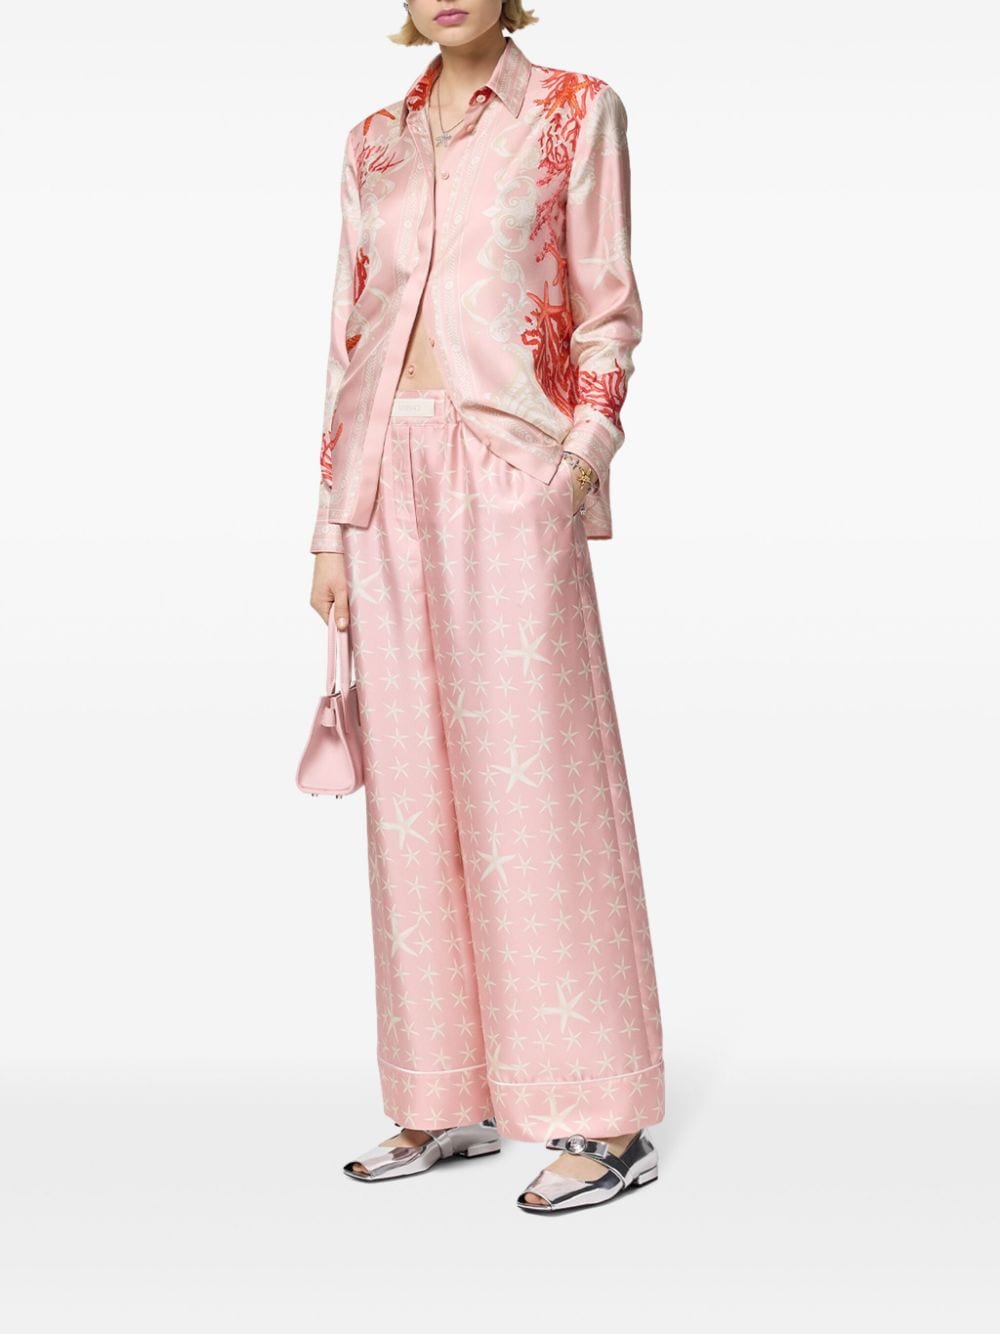 Versace Soepele broek met zeesterprint - Roze